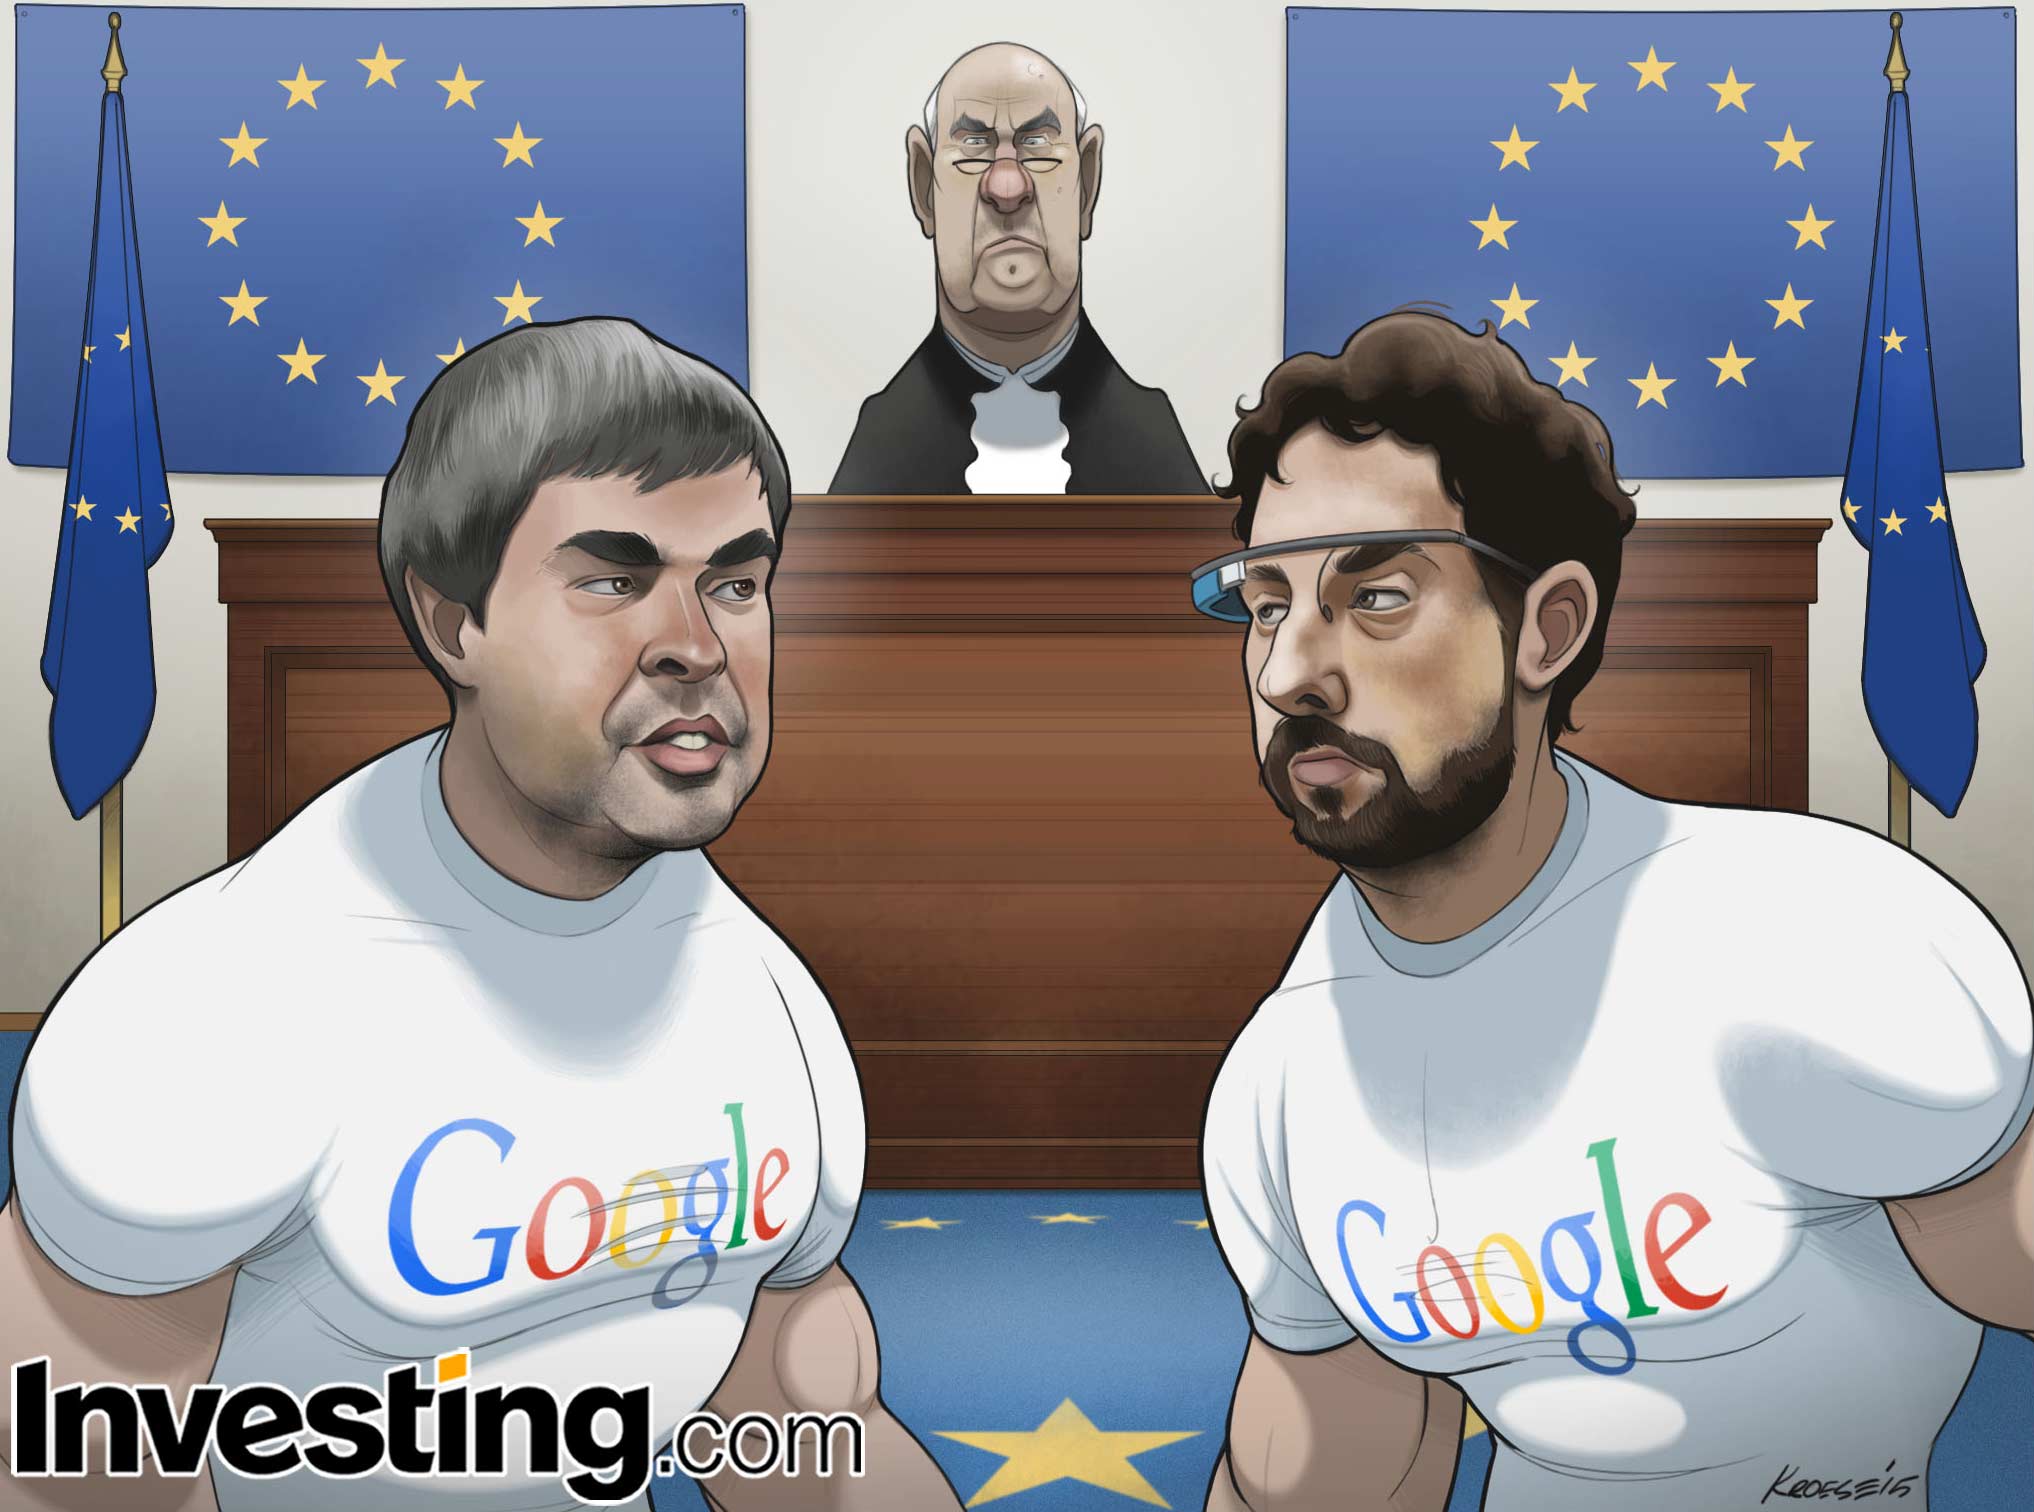 Как отразится на котировках Google решение ЕС выдвинуть официальные обвинения против компании?